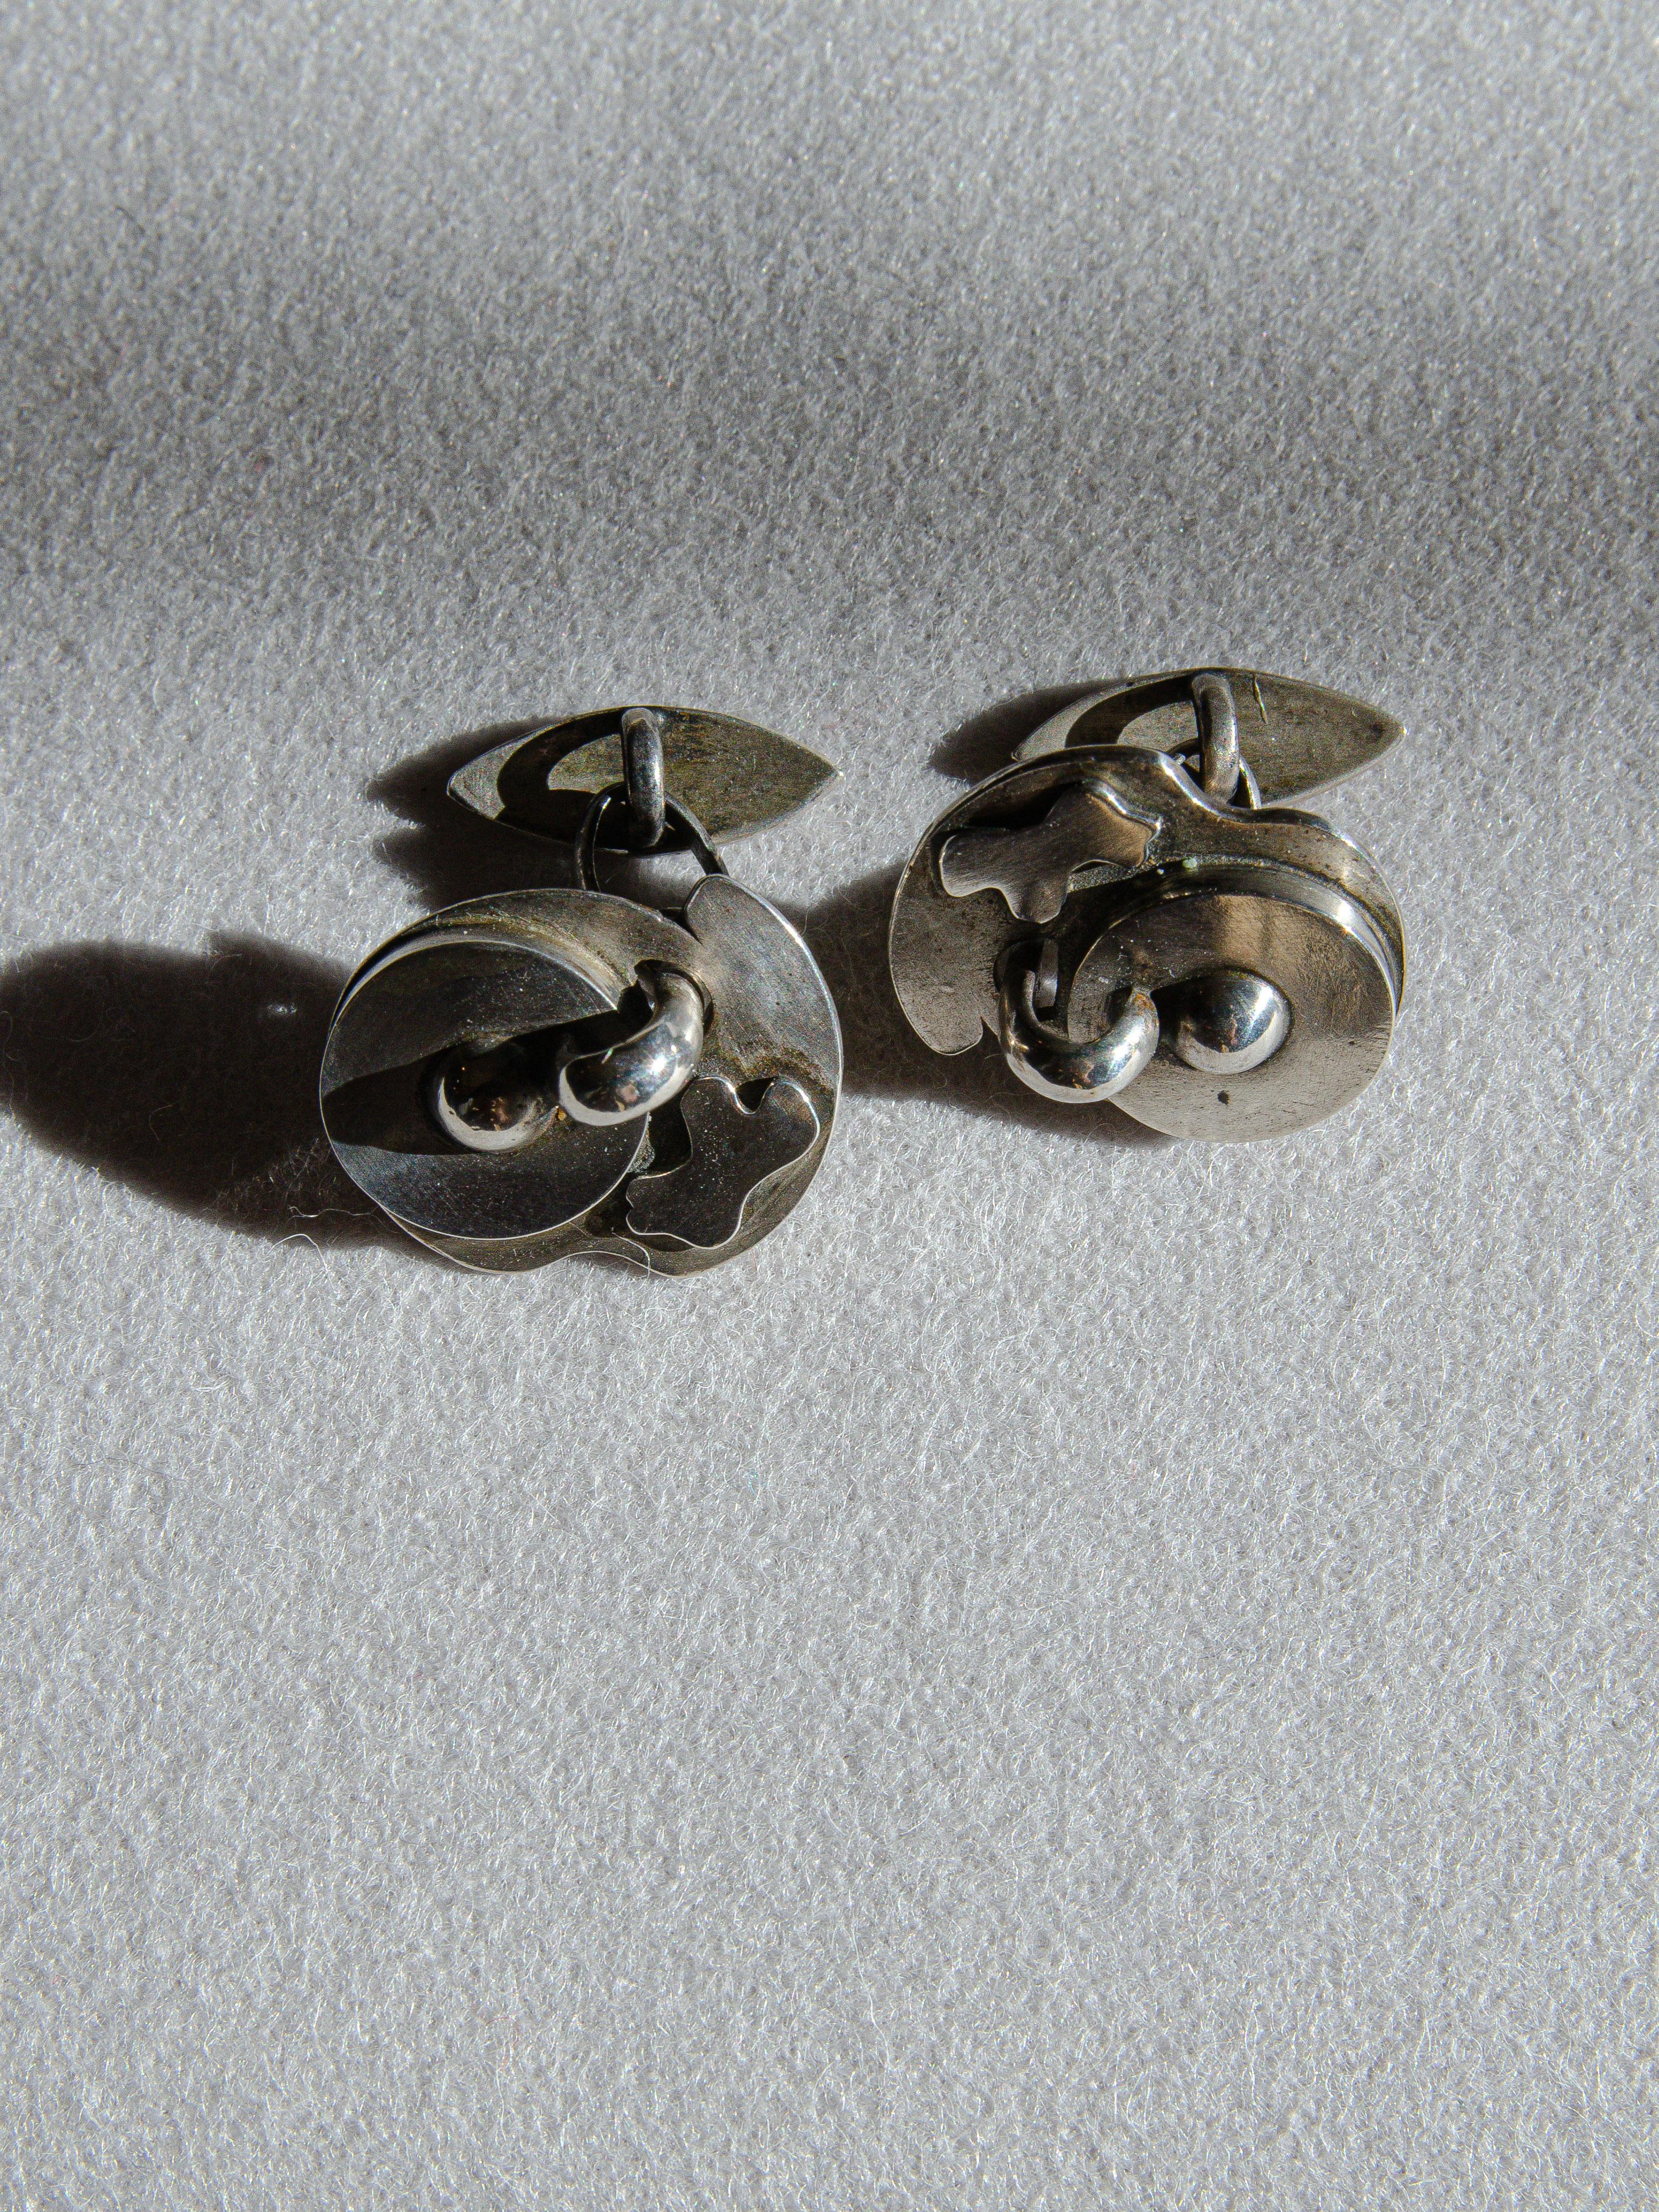 Ein fantastisches Paar Manschettenknöpfe aus Sterling, entworfen von  der ikonische modernistische Juwelier Sam Kramer aus Greenwich Village. Die biomorphen Formen sind sinnbildlich für seinen surrealistischen Stil. Er war bekannt für die Verwendung